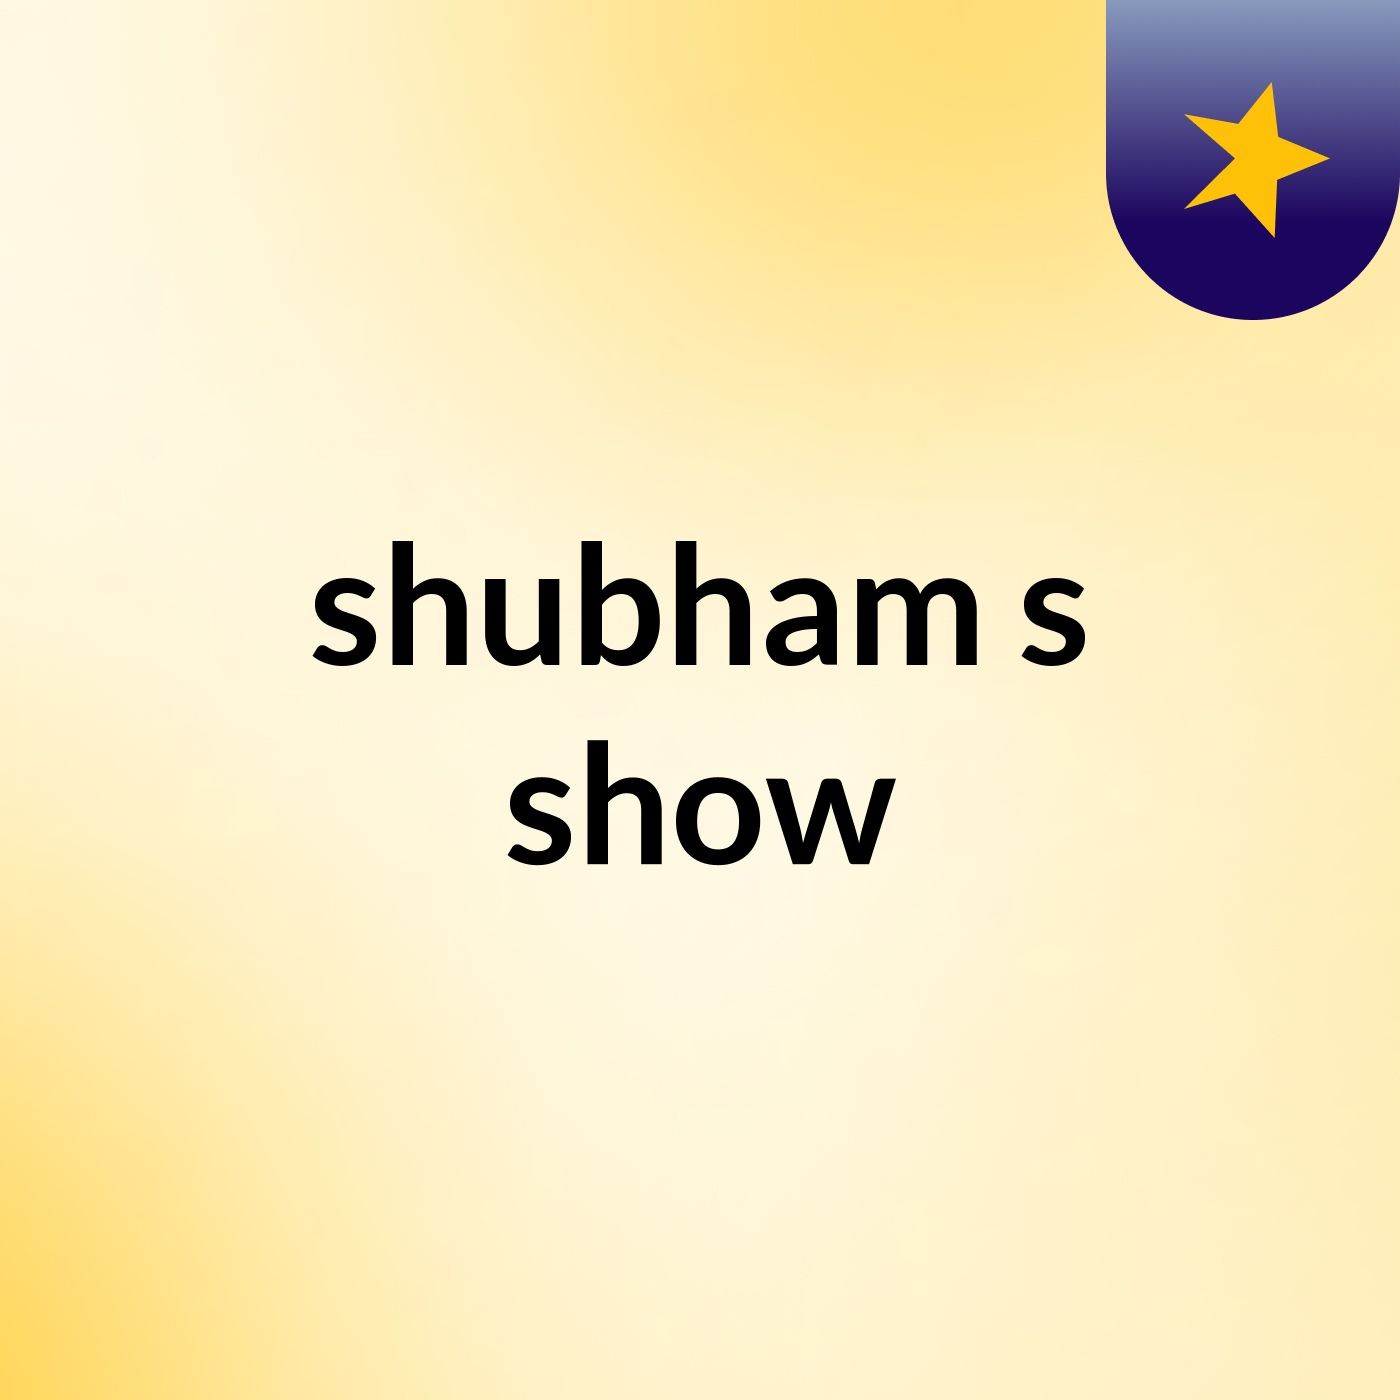 shubham's show